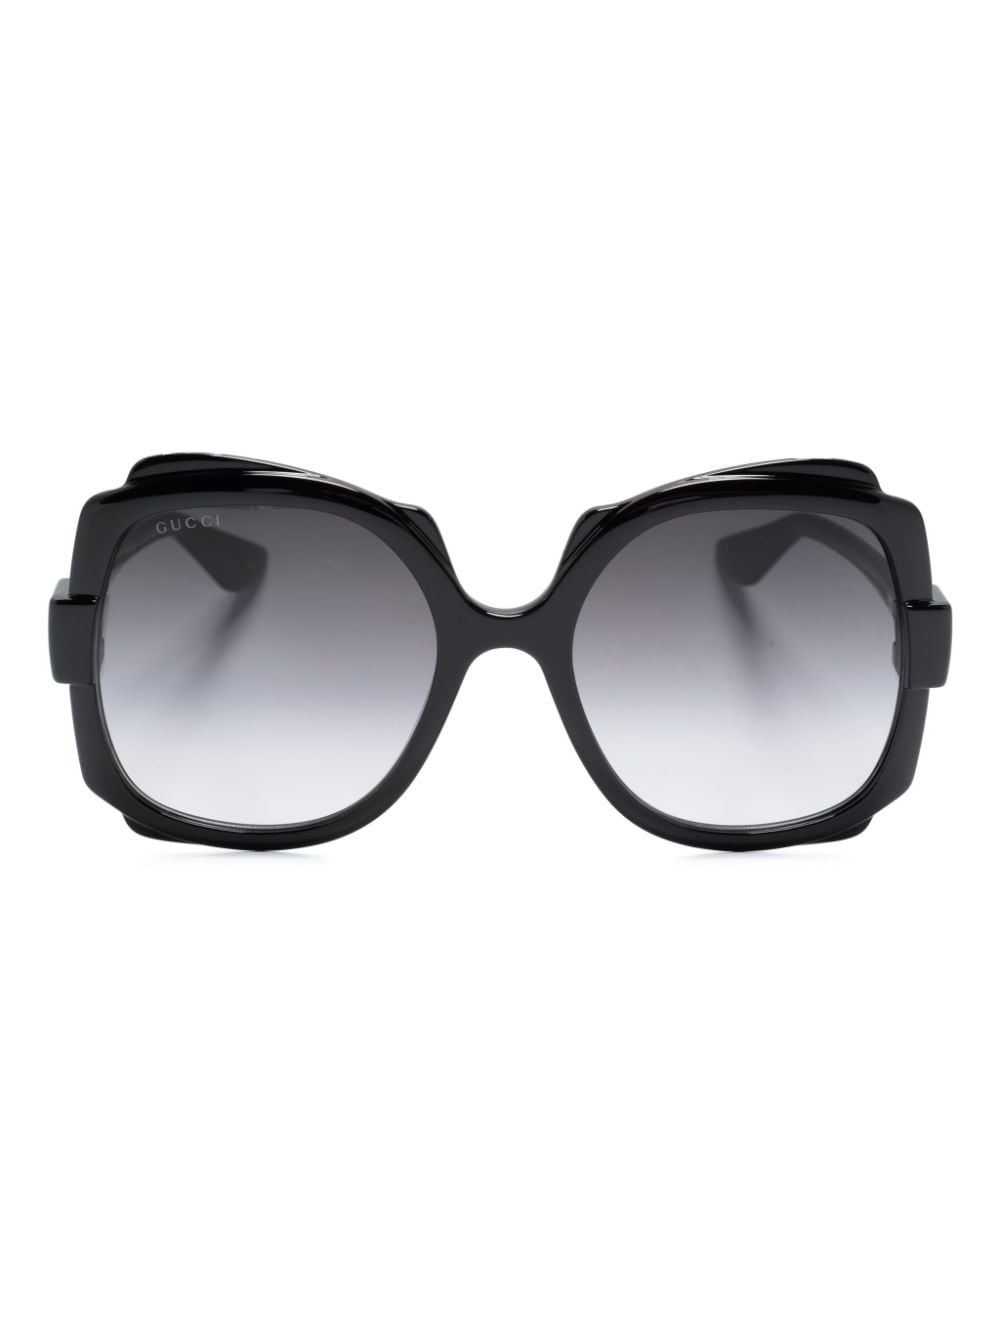 Gucci GG1431S-001 57mm New Sunglasses